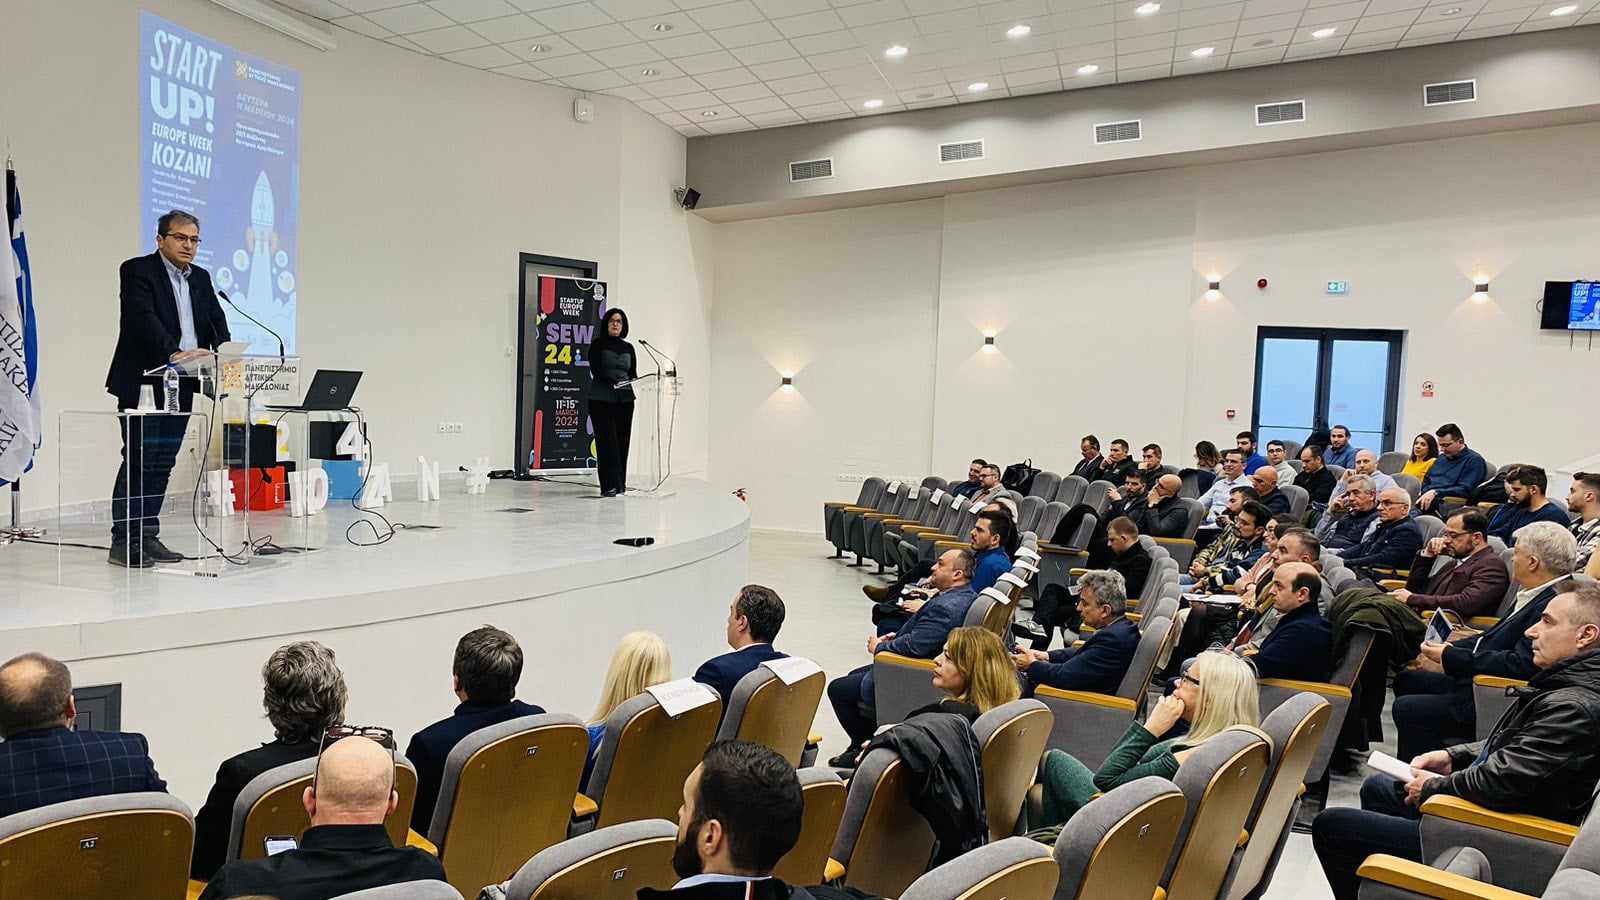 Δεκαεπτά νεοφυείς εταιρείες παρουσίασαν τη δράση τους στο Europe Week Kozani